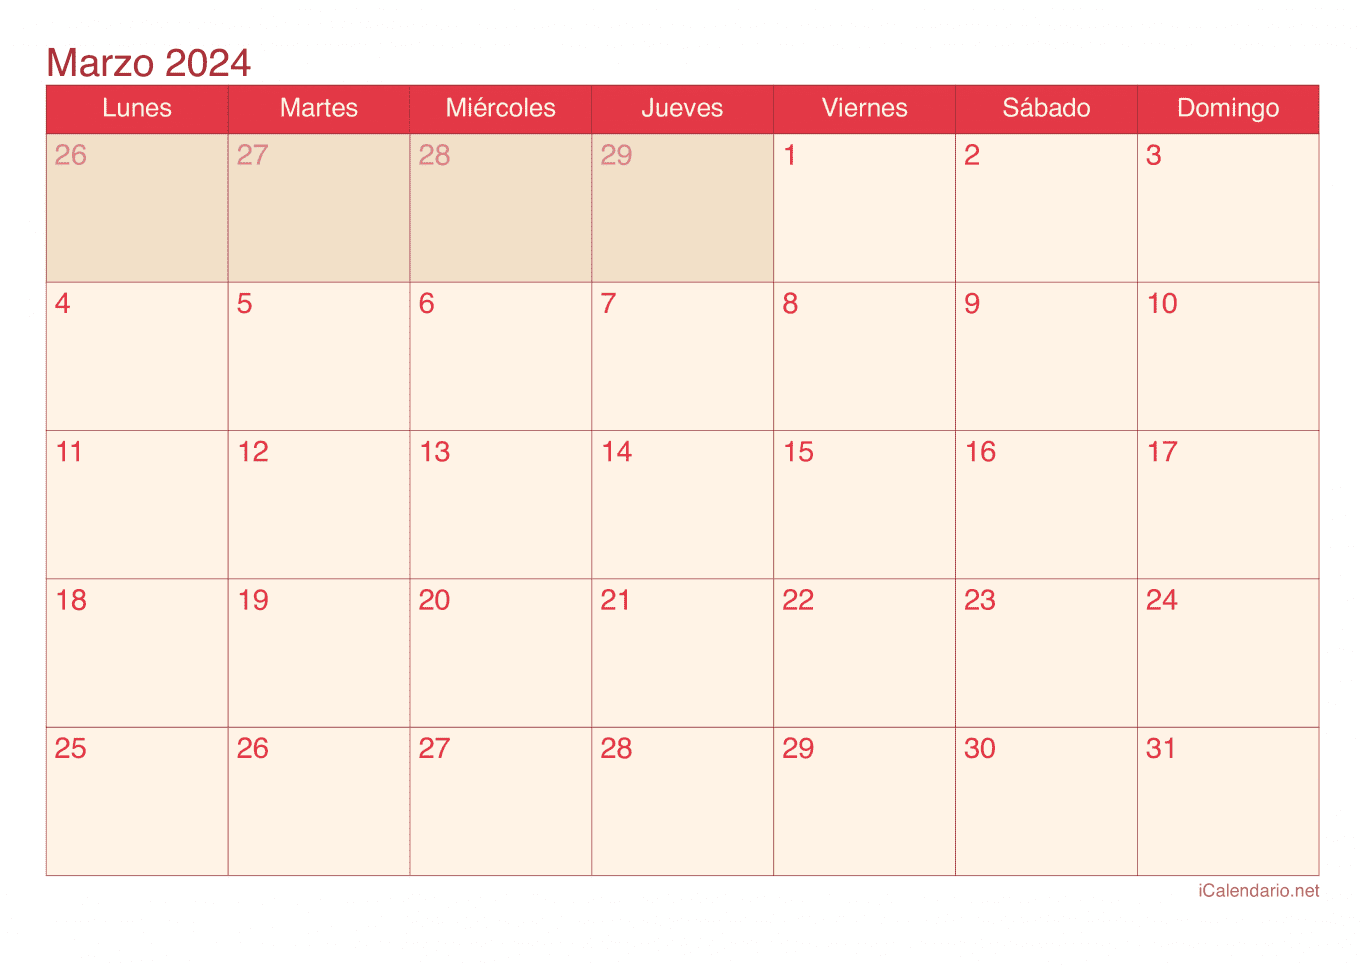 Calendario de marzo 2024 - Cherry